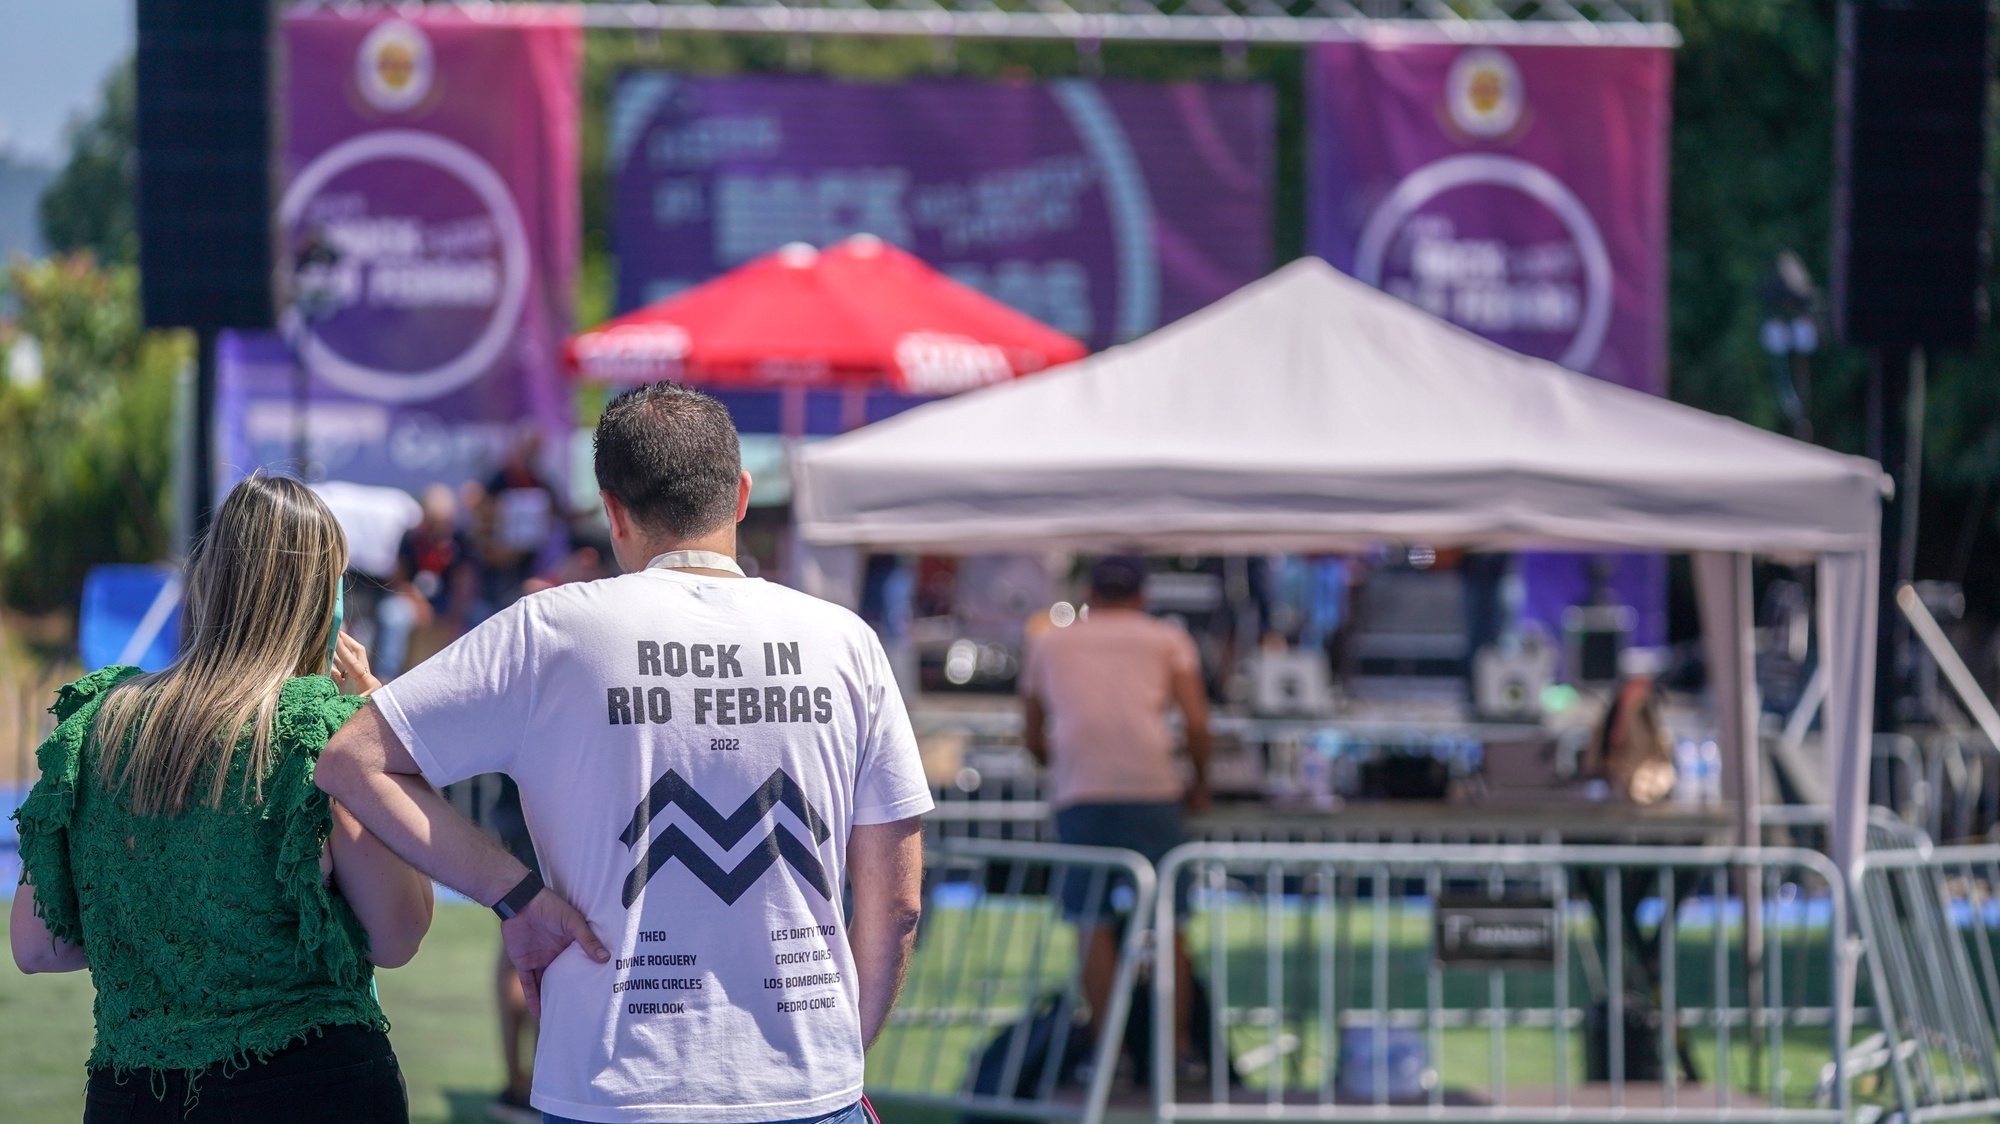 O Rock_Rio Febras regressou neste ano de 2023 para uma 2.ª edição, com música trazida por bandas e DJs do concelho de Guimarães, Briteiros, 22 de julho de 2023. Organizado pela Casa do Povo de Briteiros, Instituição Particular de Solidariedade Social (IPSS), o festival tem entrada livre e oferece também uma praça de restauração. HUGO DELGADO/LUSA